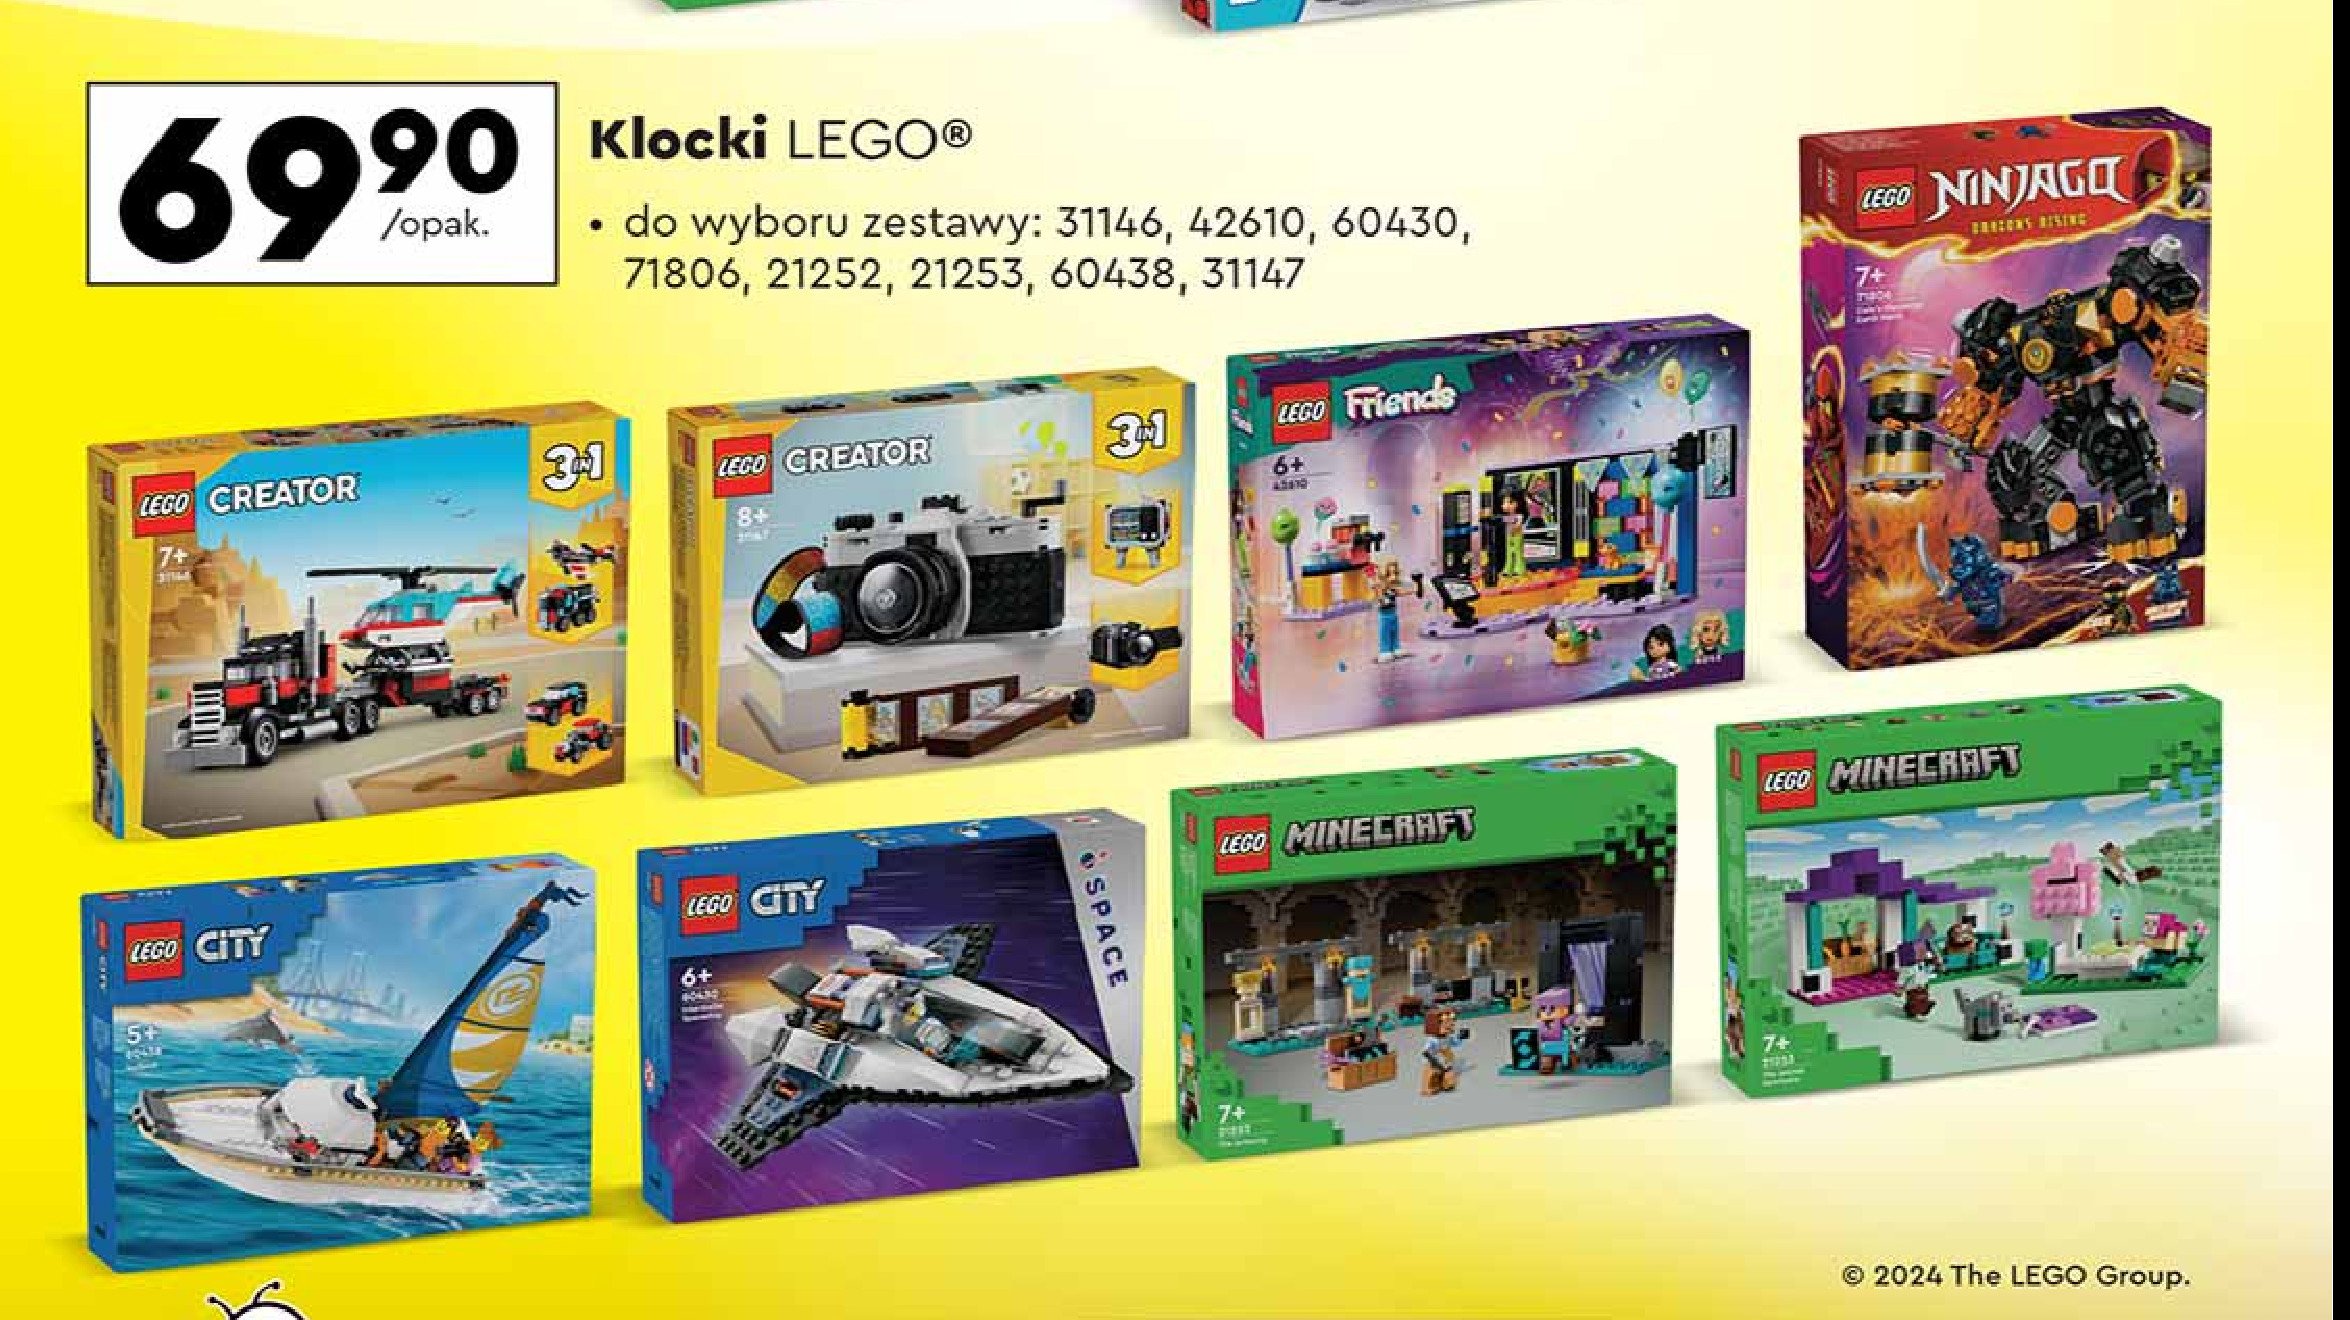 Klocki 31146 Lego creator promocja